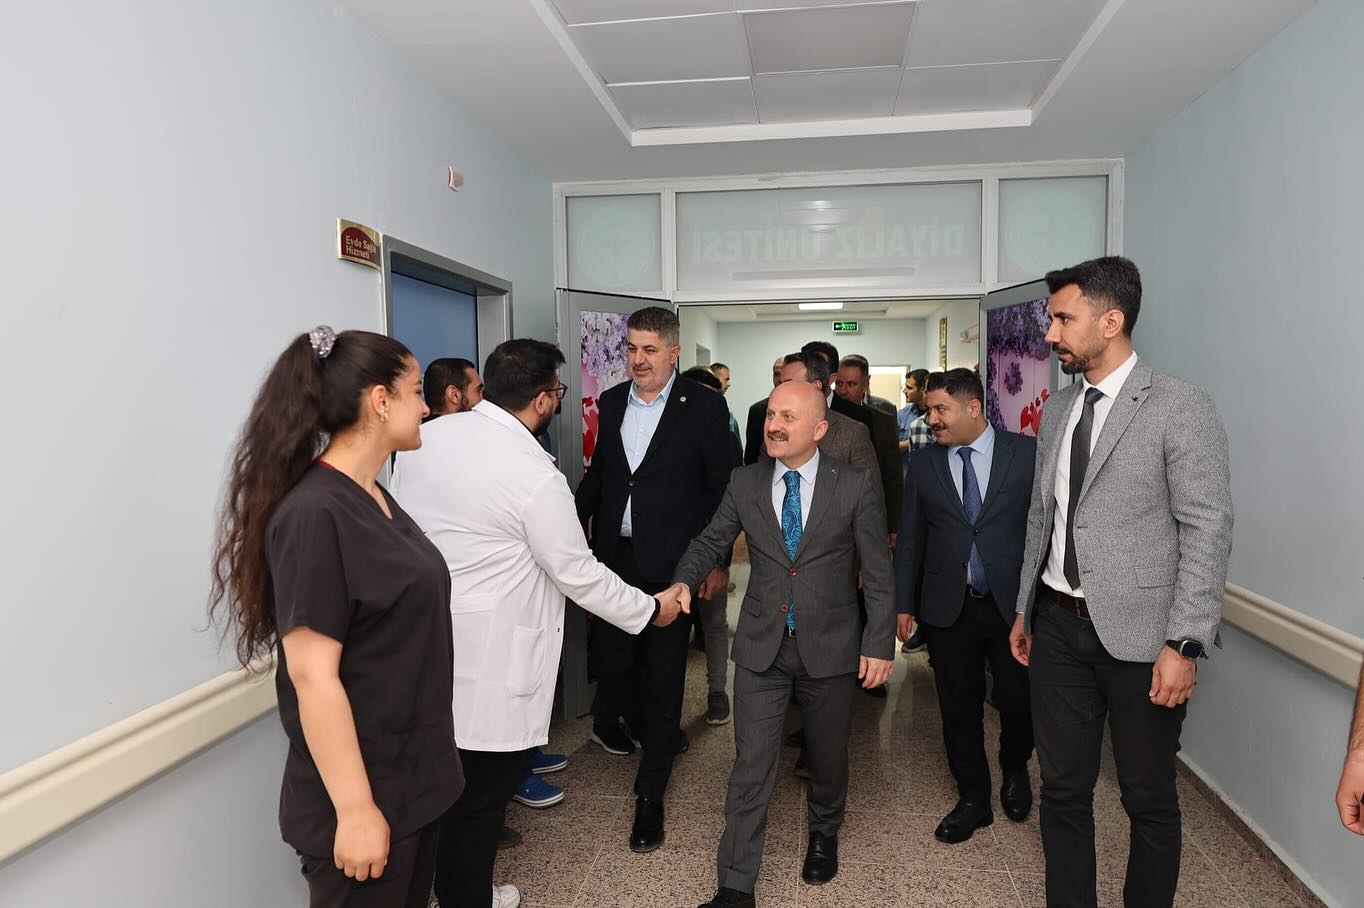 Sincik Devlet Hastanesi'nde Diyaliz Ünitesi Hizmete Girdi